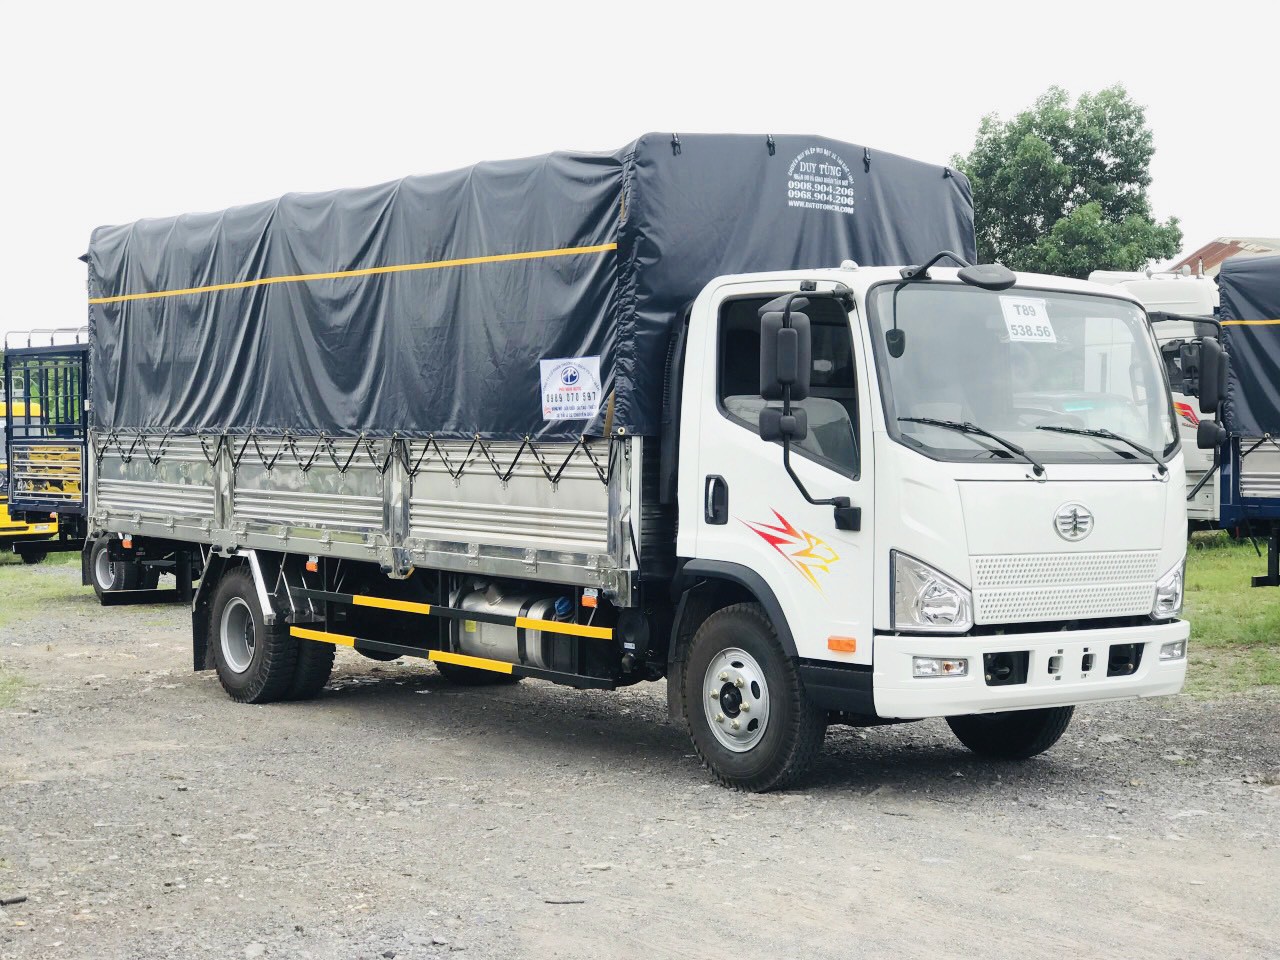 bán xe tải faw tiger 8 tấn thùng 6m2 đời 2022 phiên bản cải tiến của faw ga cơ 8 tấn